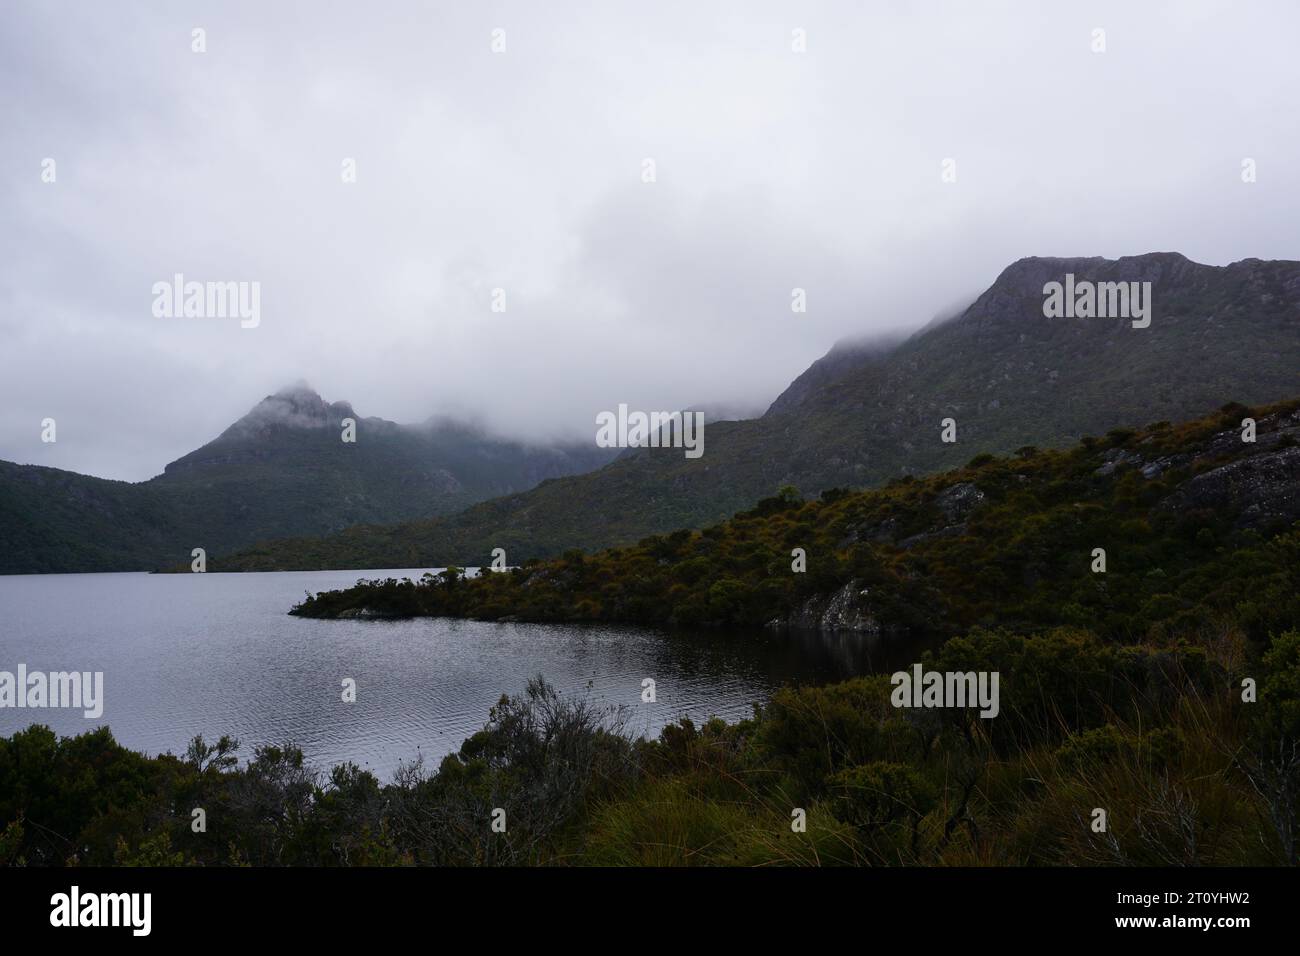 Dramatisch bewölkter, stimmungsvoller Blick auf die Landschaft mit niedrigen, hängenden Wolken über dem Dove Lake, Cradle Mountain, Tasmanien, Australien Stockfoto